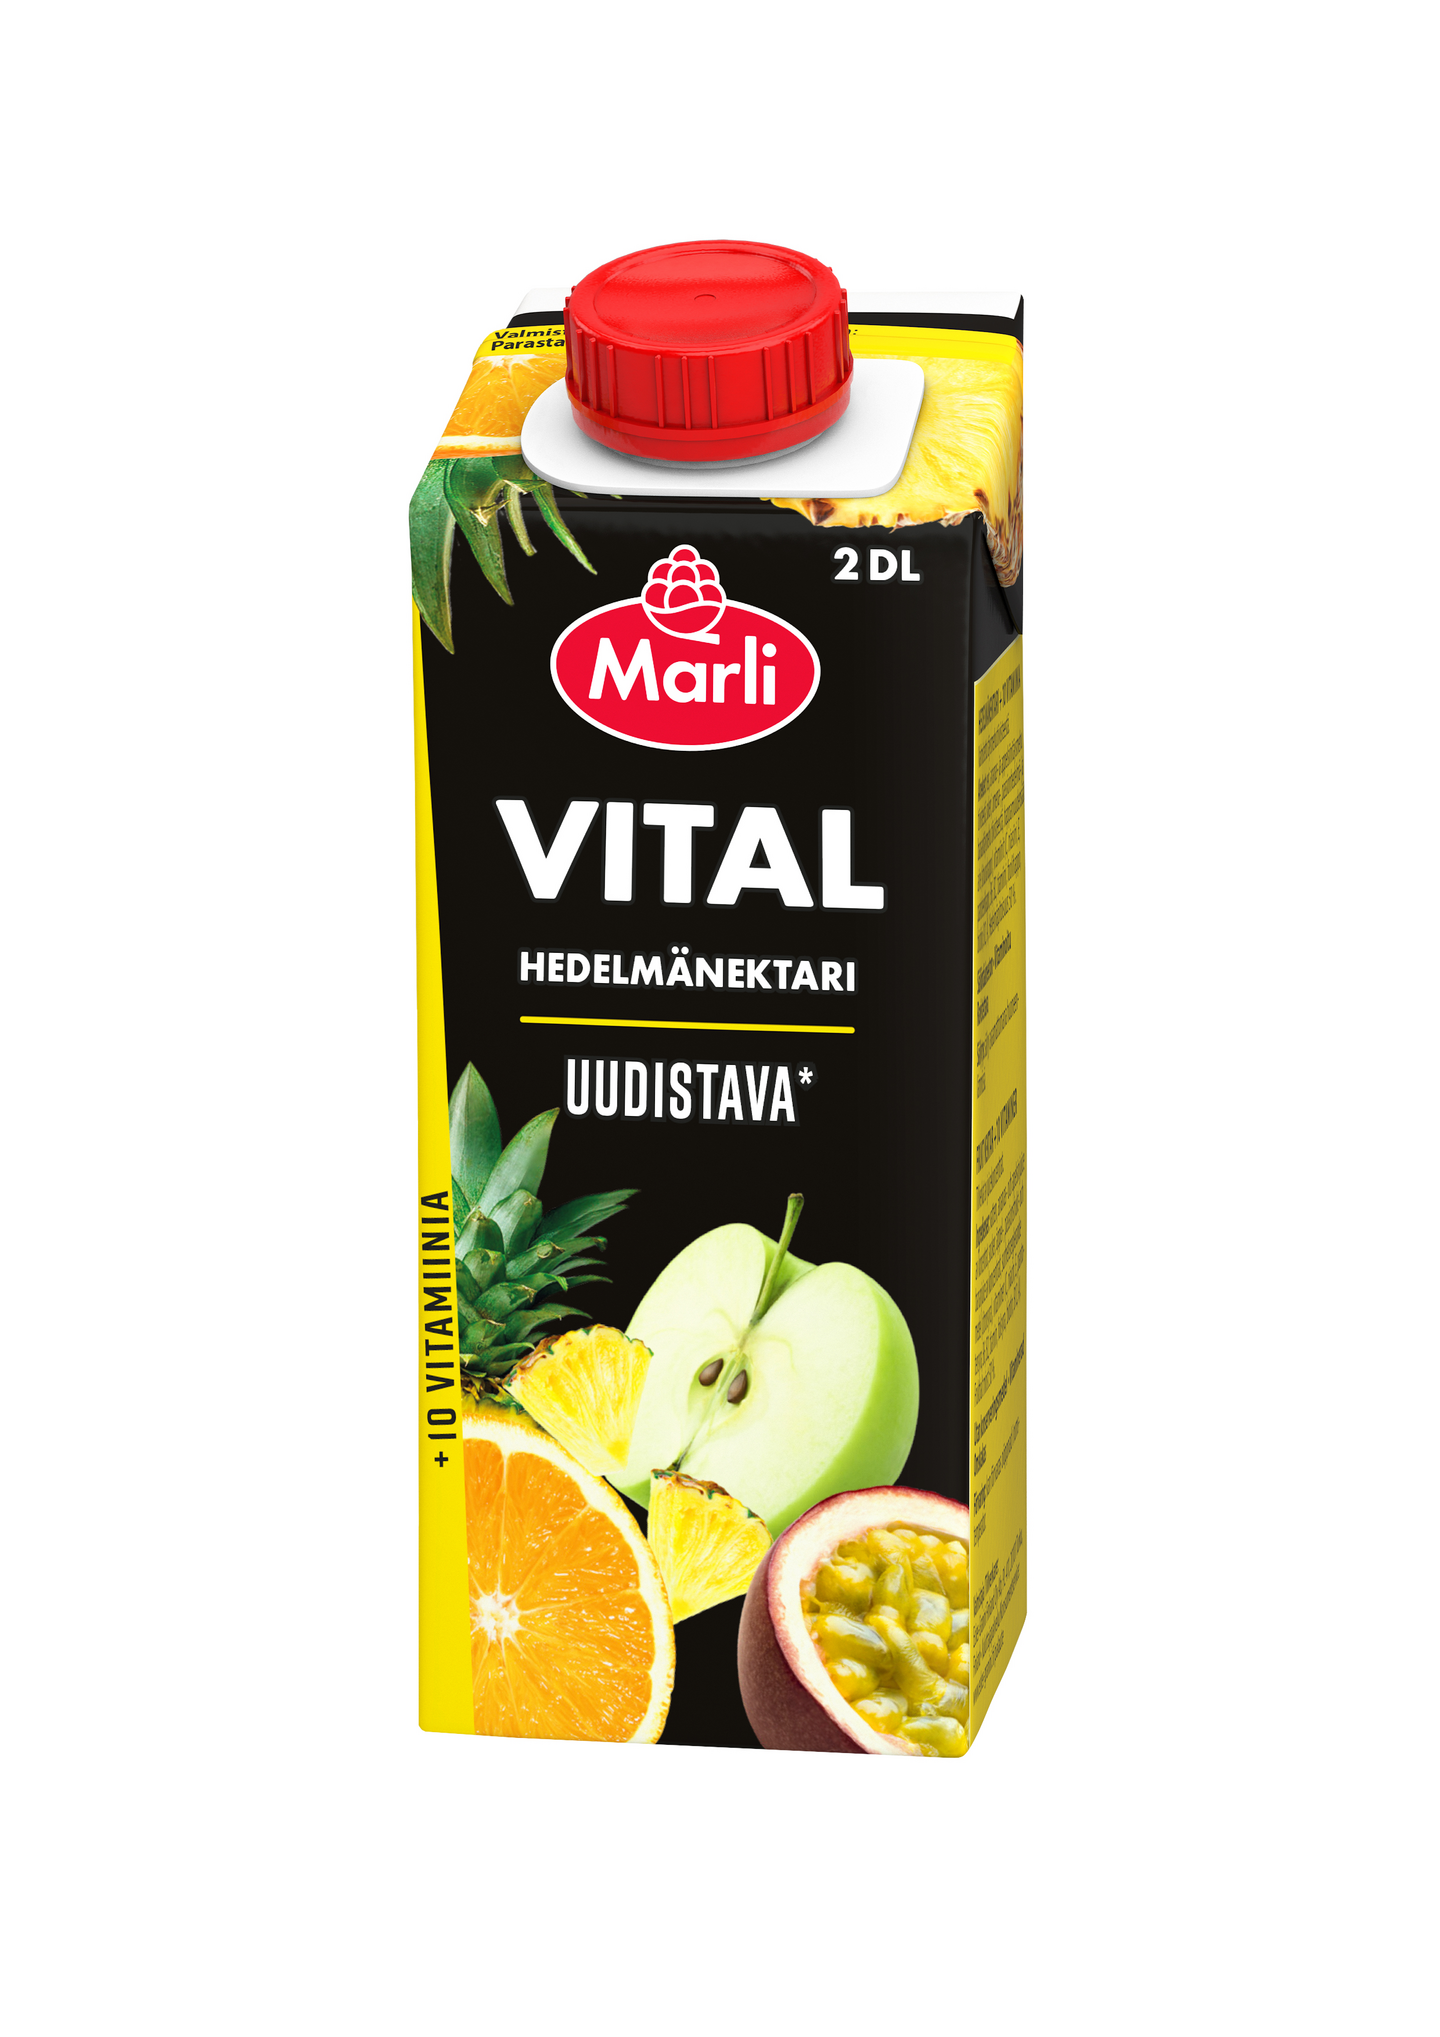 Marli Vital hedelmänektari + 10 vitamiinia 2dl